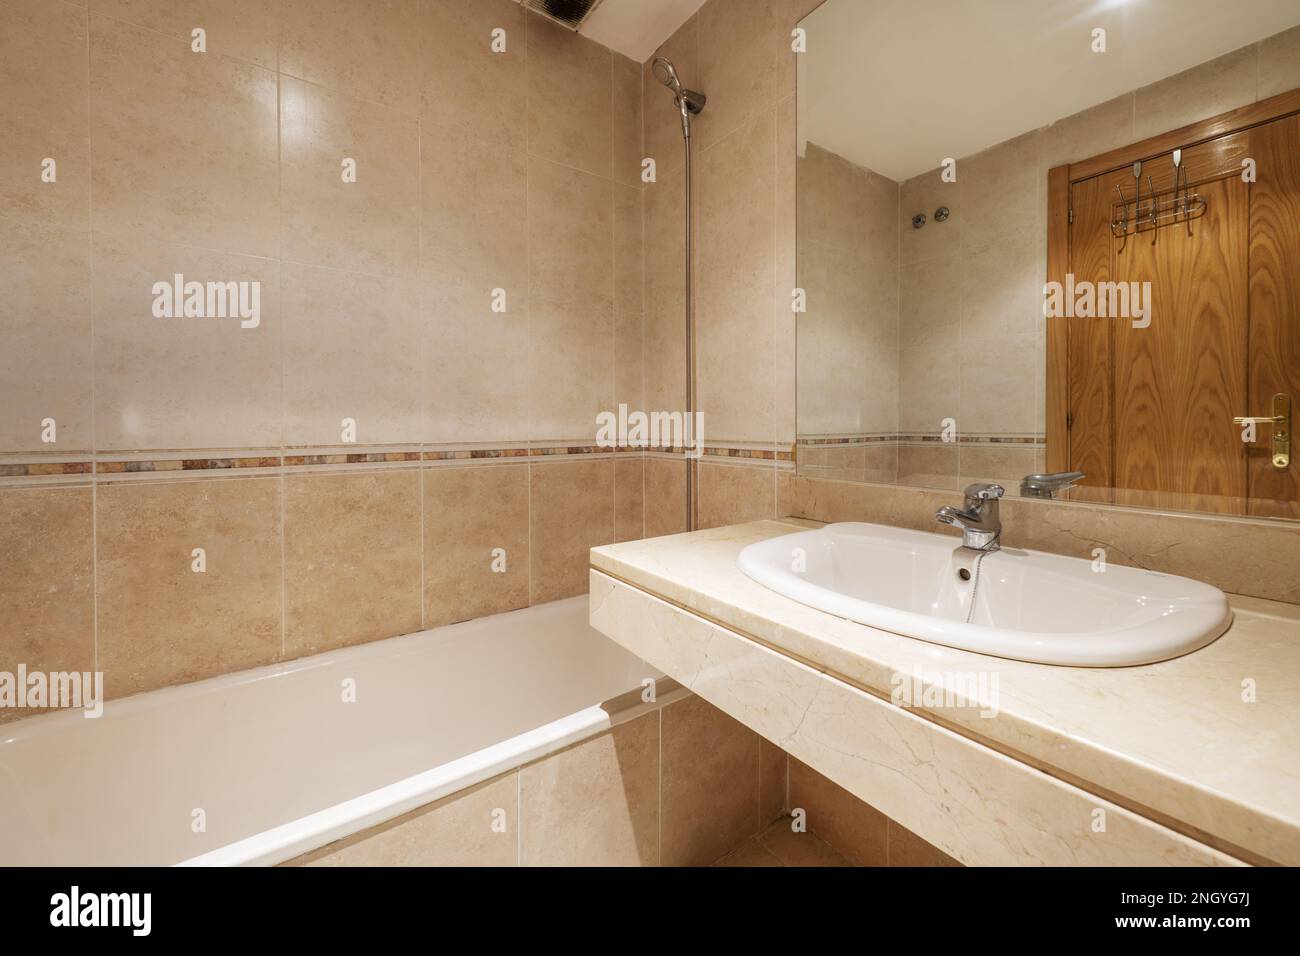 Bagno con lavabo in marmo crema senza armadio con specchio integrato nella parete e con una lunga vasca da bagno Foto Stock